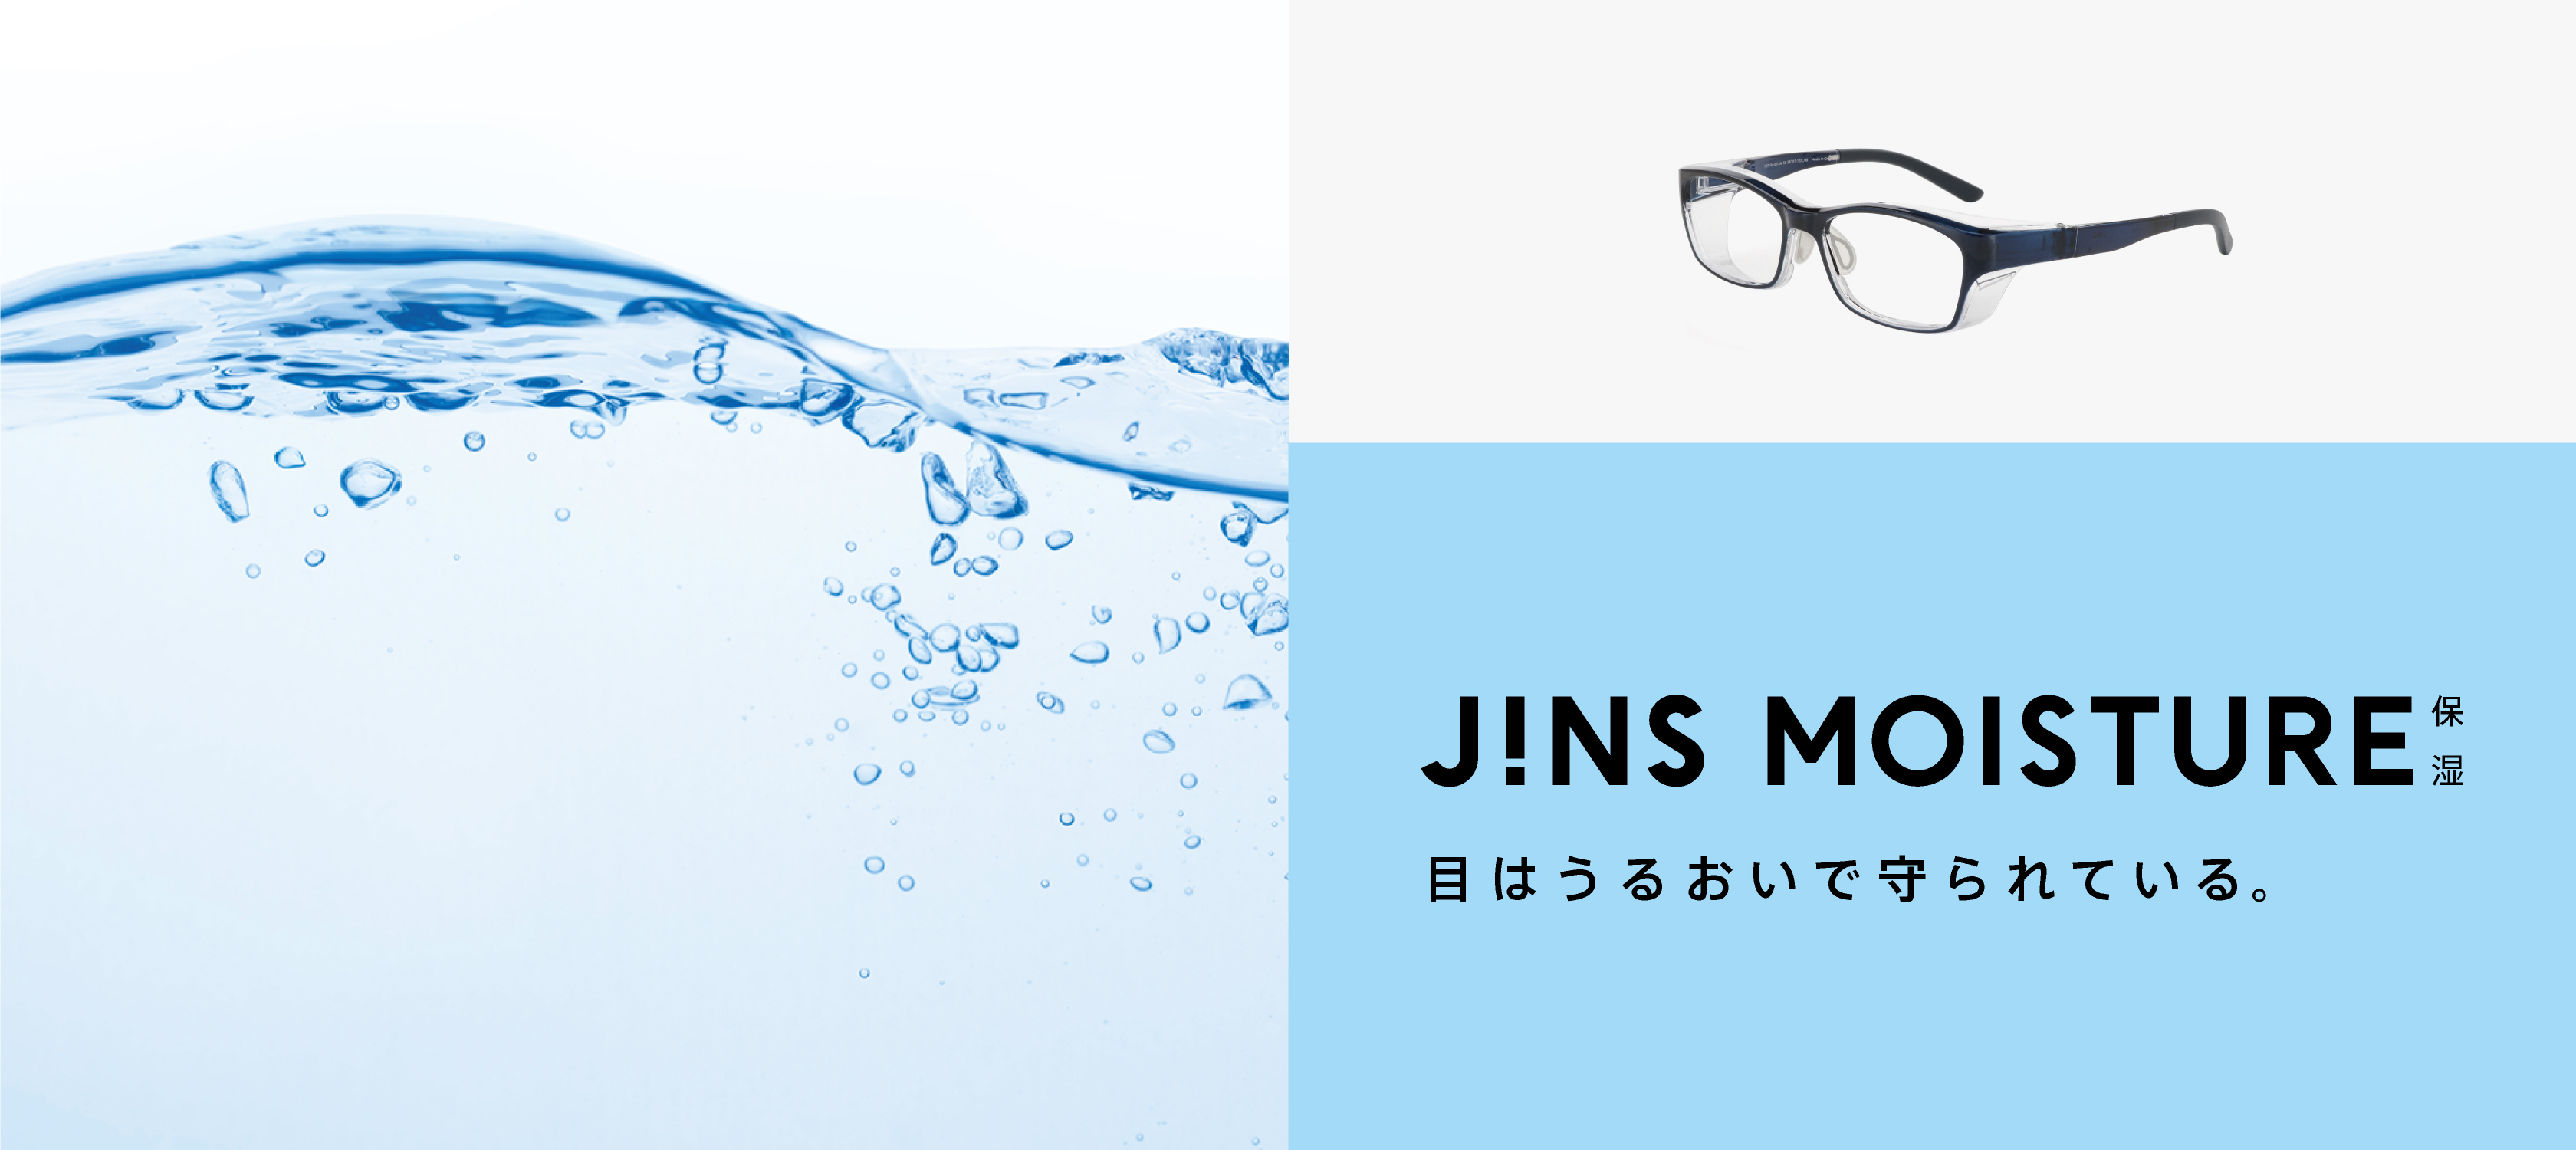 乾燥から目を守る 保湿メガネ Jins Moisture 11 14 木 リニューアル発売 株式会社 ジンズのプレスリリース